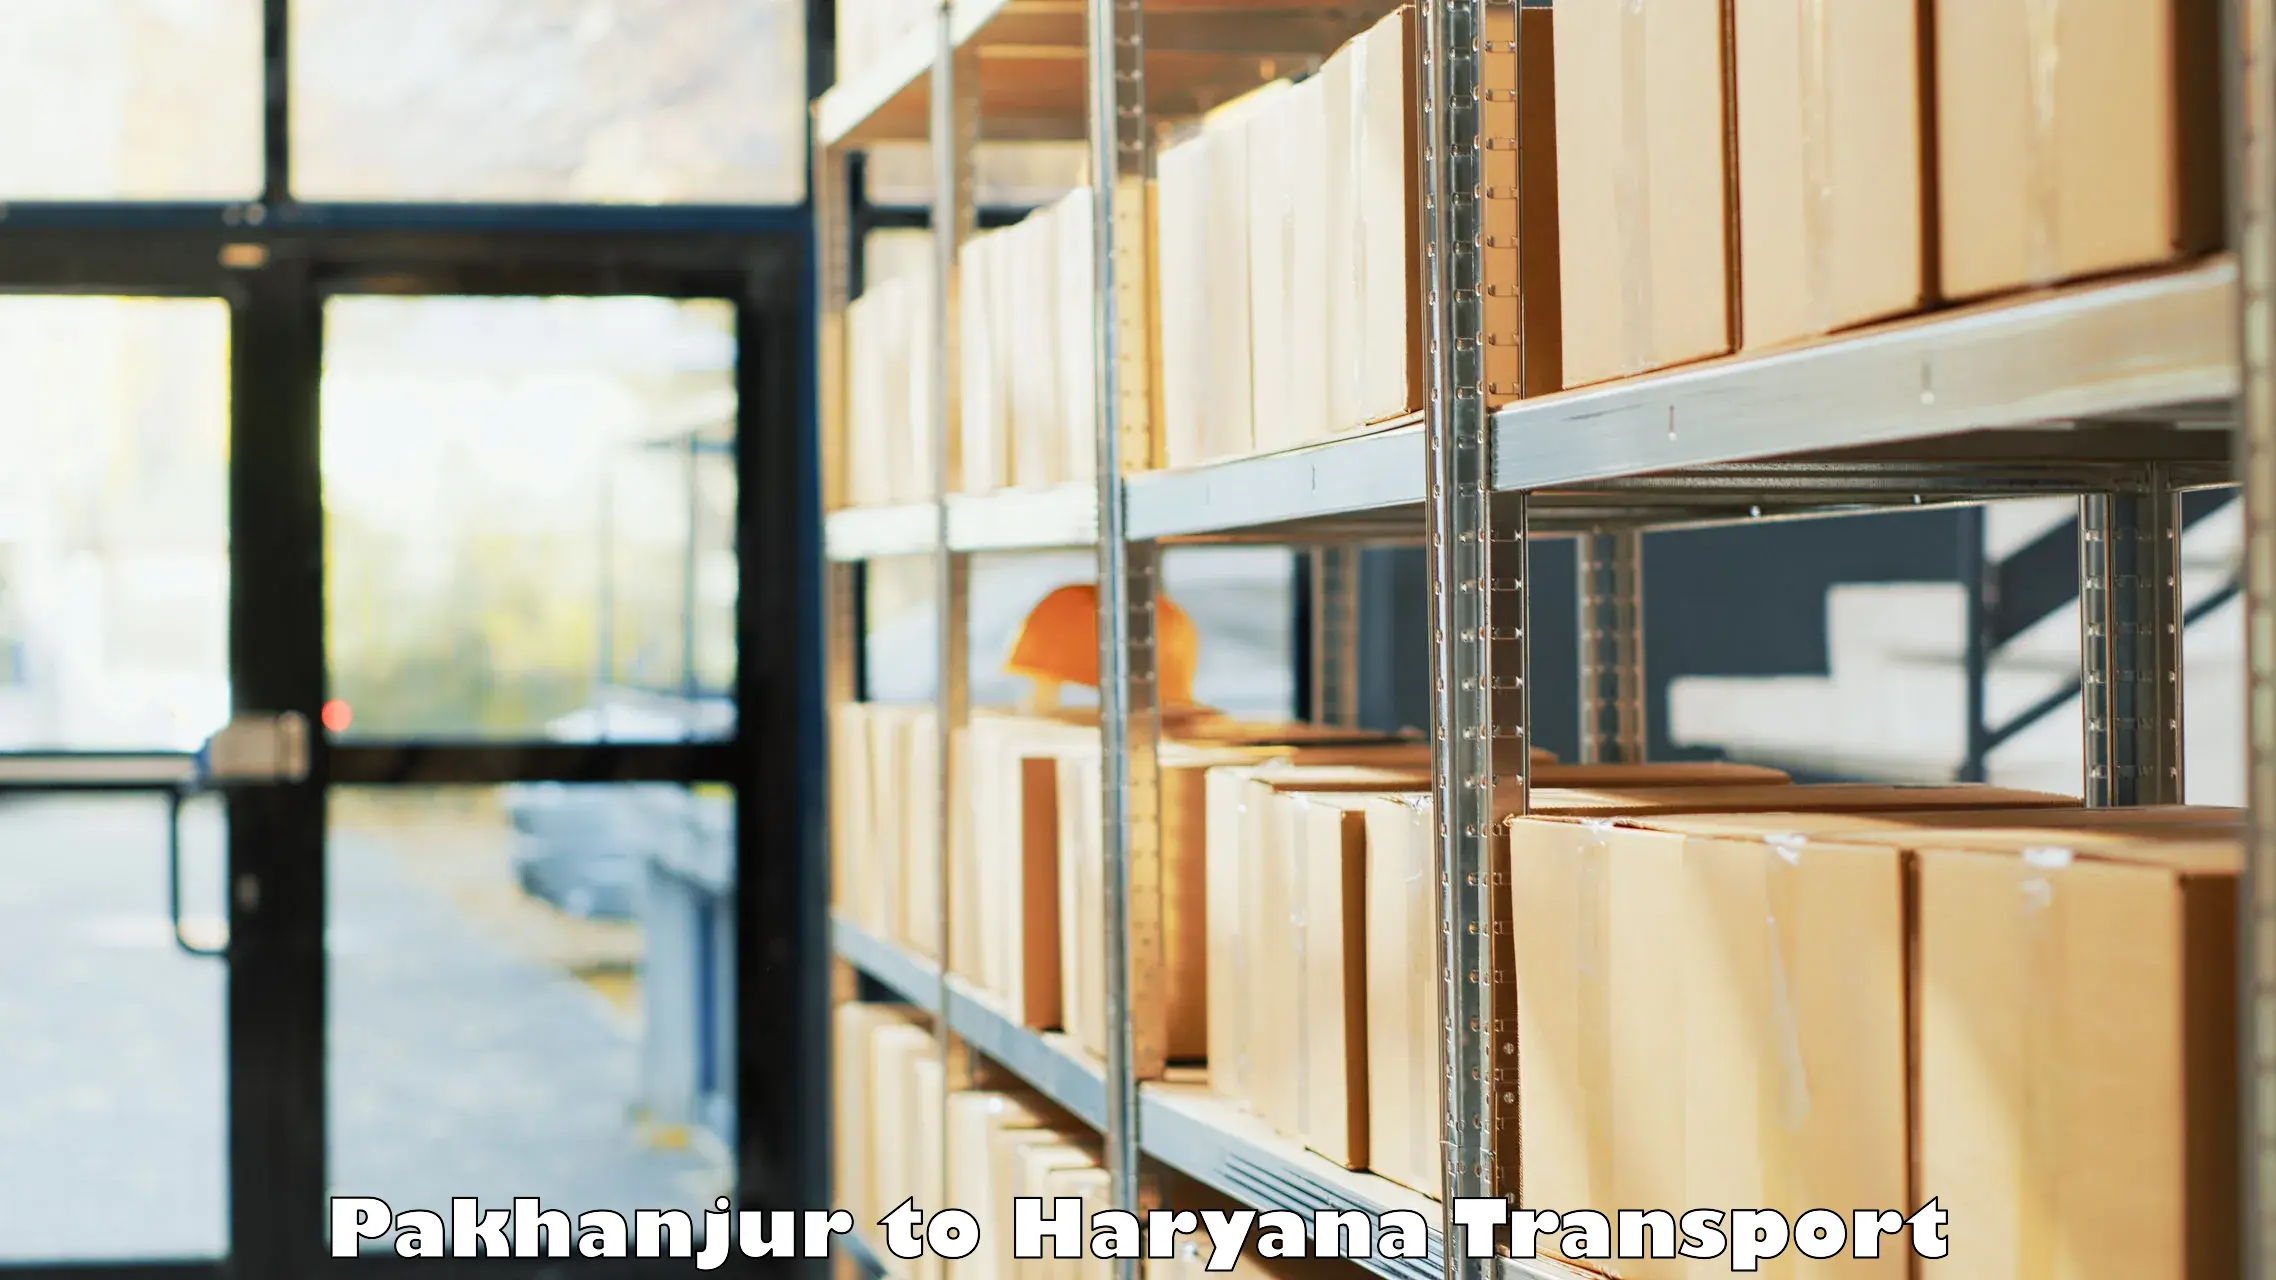 Transport in sharing Pakhanjur to Bhuna